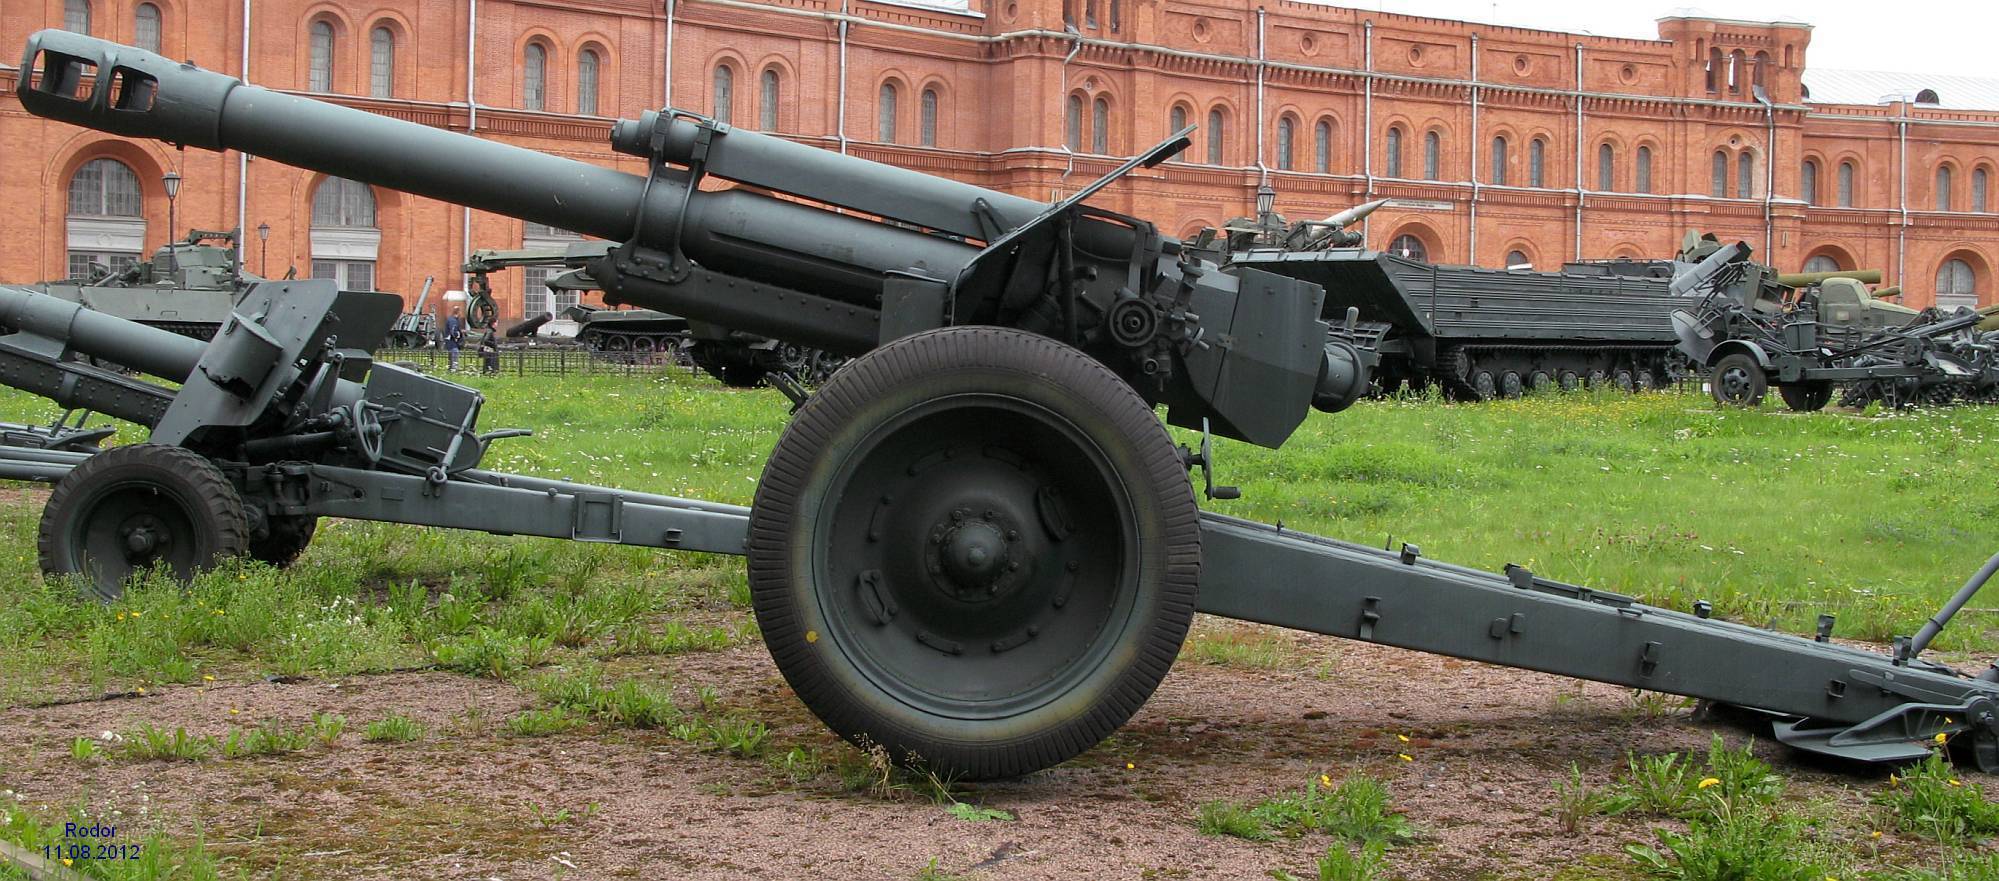 Реферат 152-мм гаубица образца 1943 года (д-1)